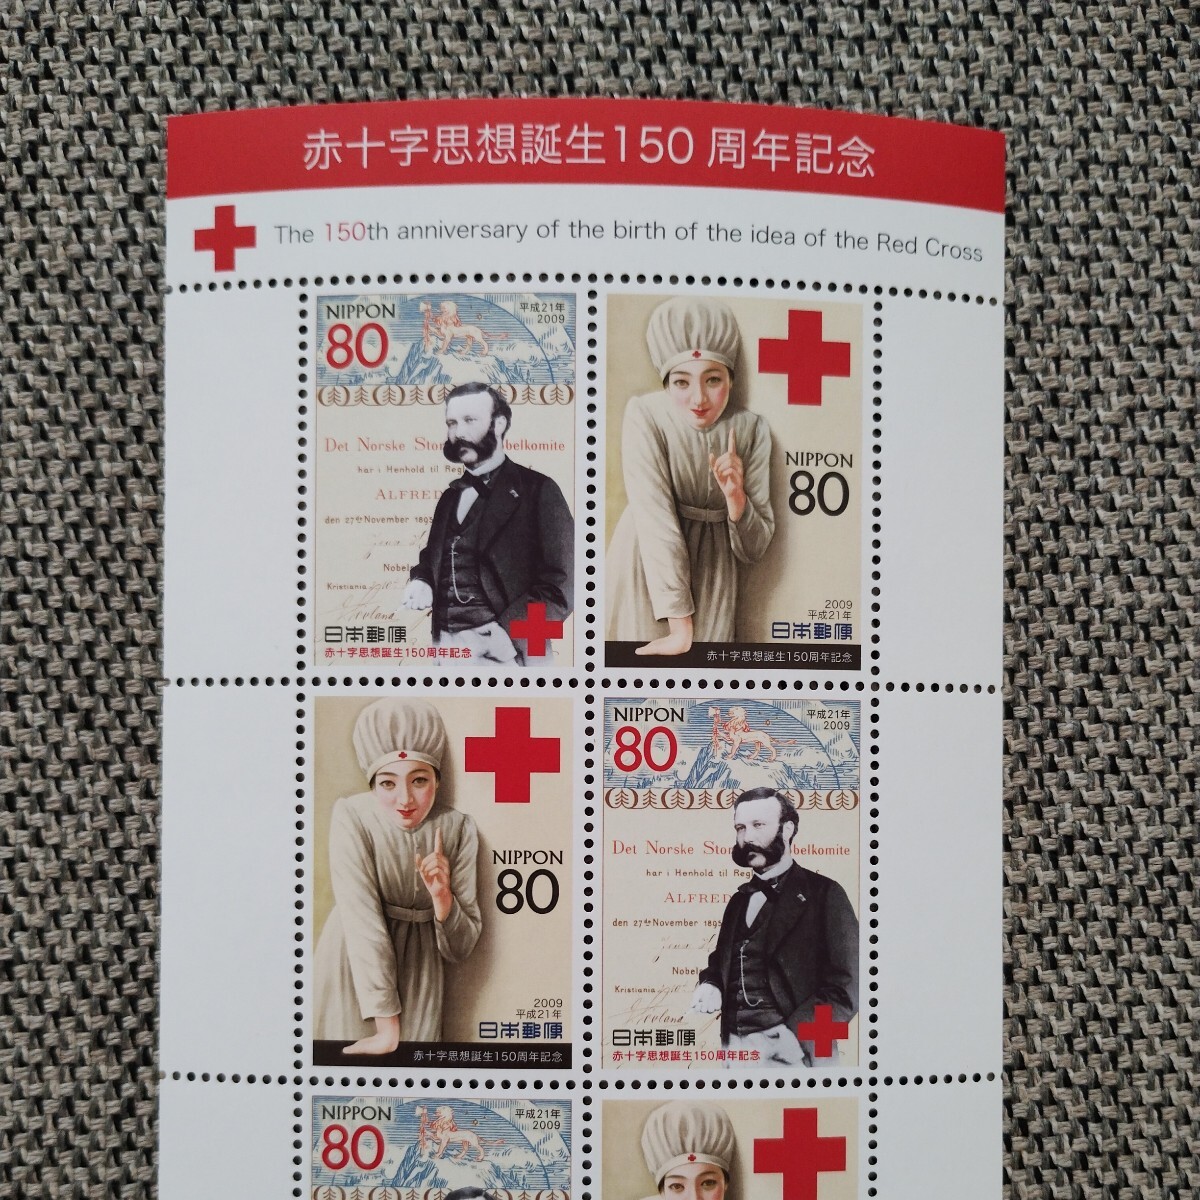 【送料無料】記念切手 赤十字思想誕生150周年記念 日本郵便 平成21年5月8日 1シート_画像2